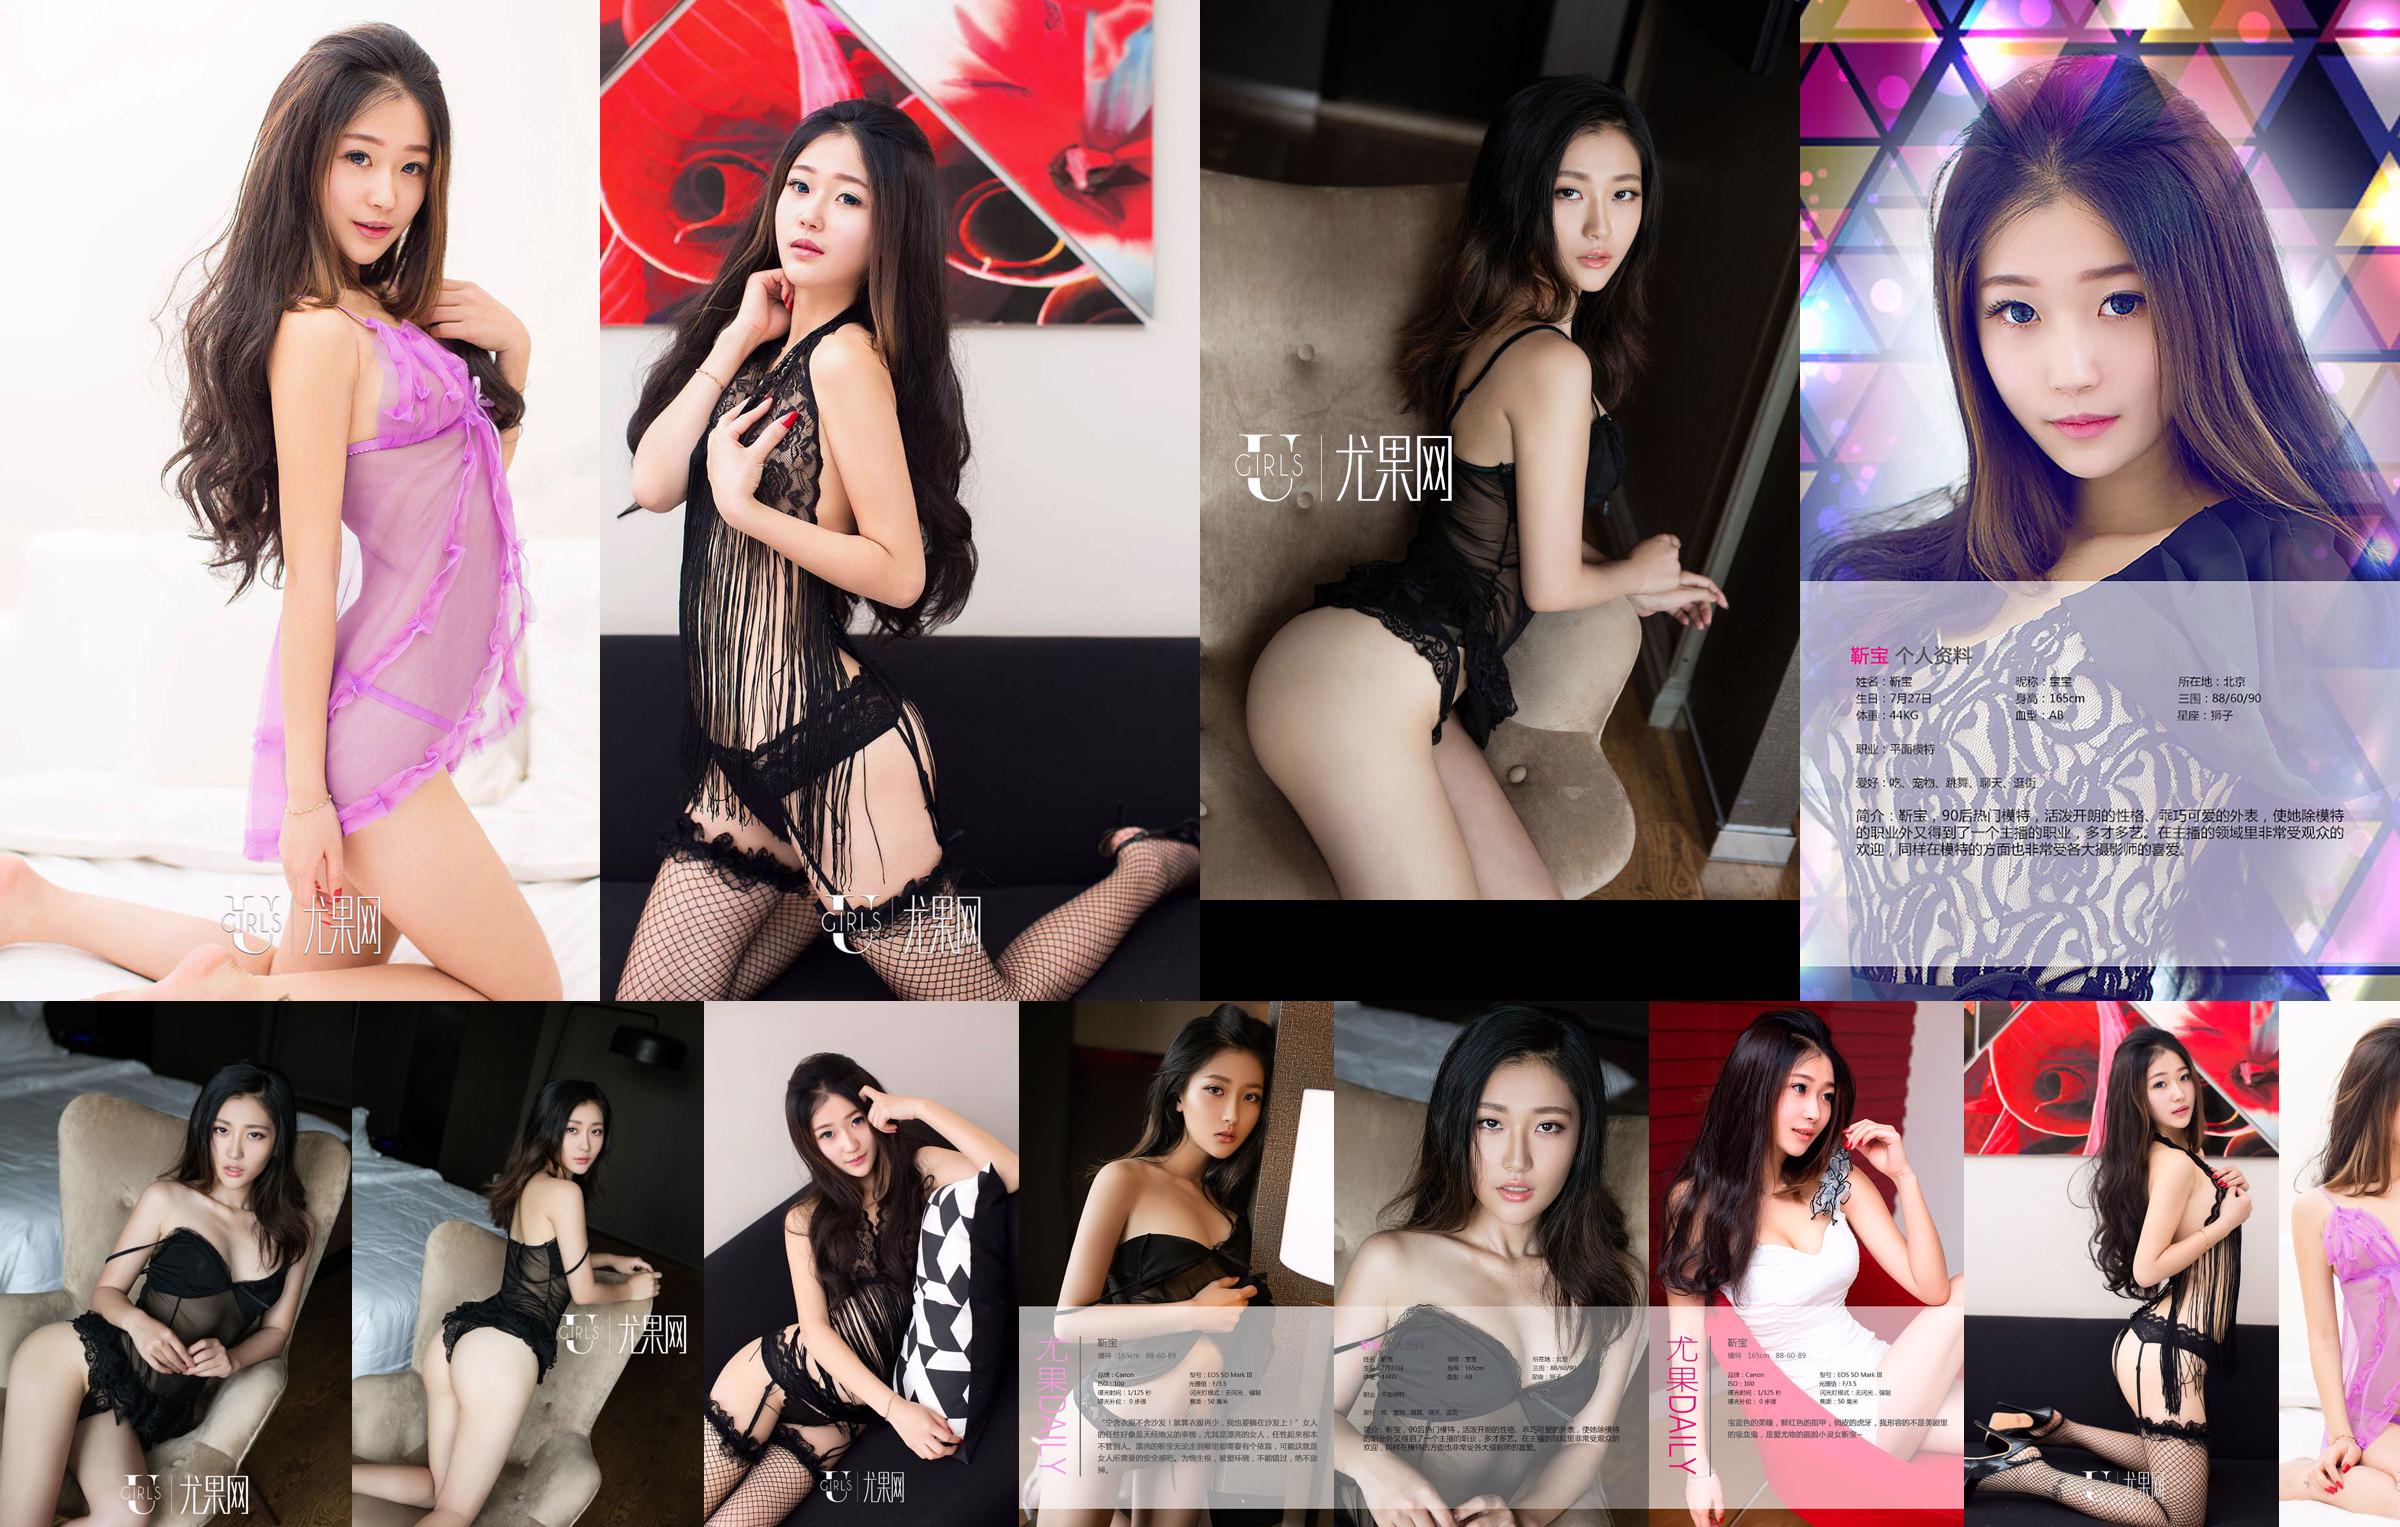 Jin Bao "Een prachtige lolita op het werk" [Love Youwu Ugirls] No.365 No.5fb84c Pagina 19